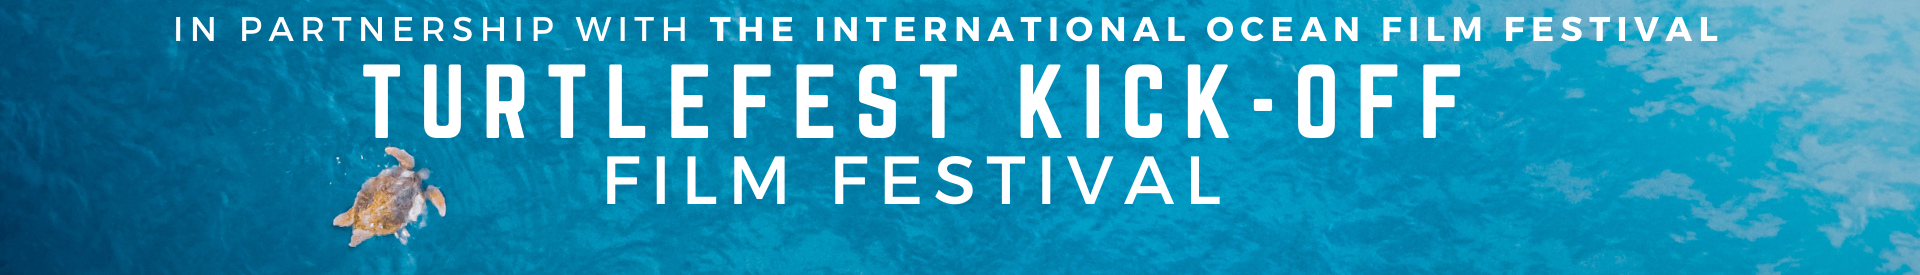 TurtleFest Kick-off Virtual Film Fest